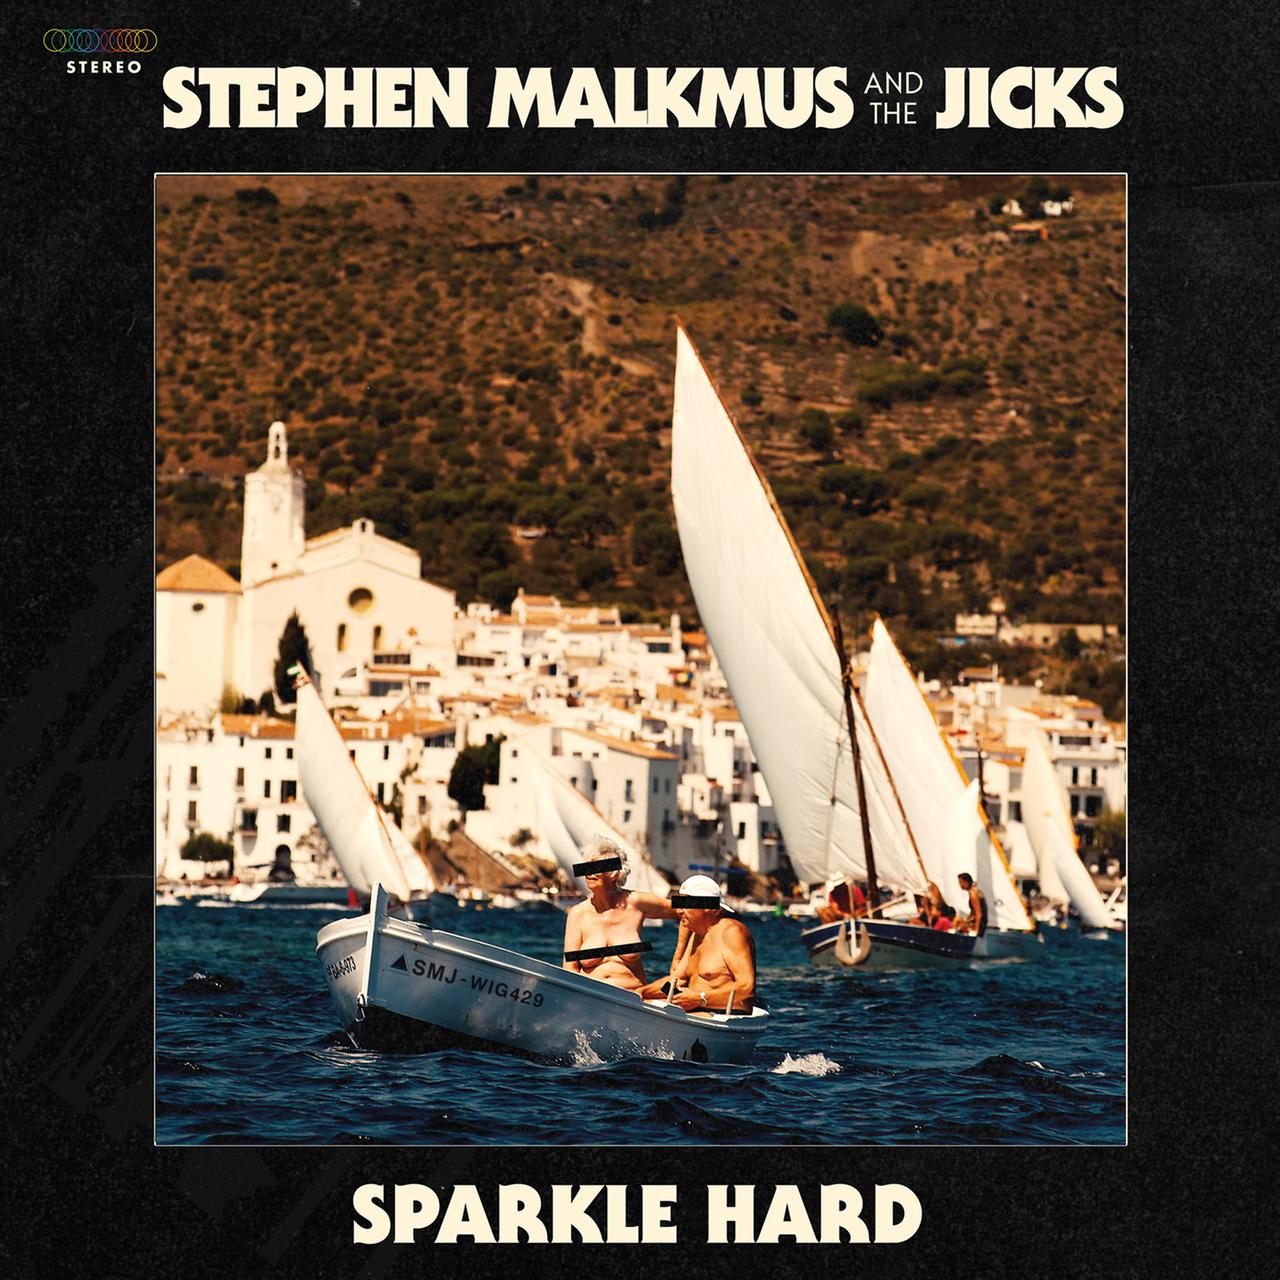 Album Cover von Stephen Malkmus & The Jicks. Das Album heißt "Sparkle hard"